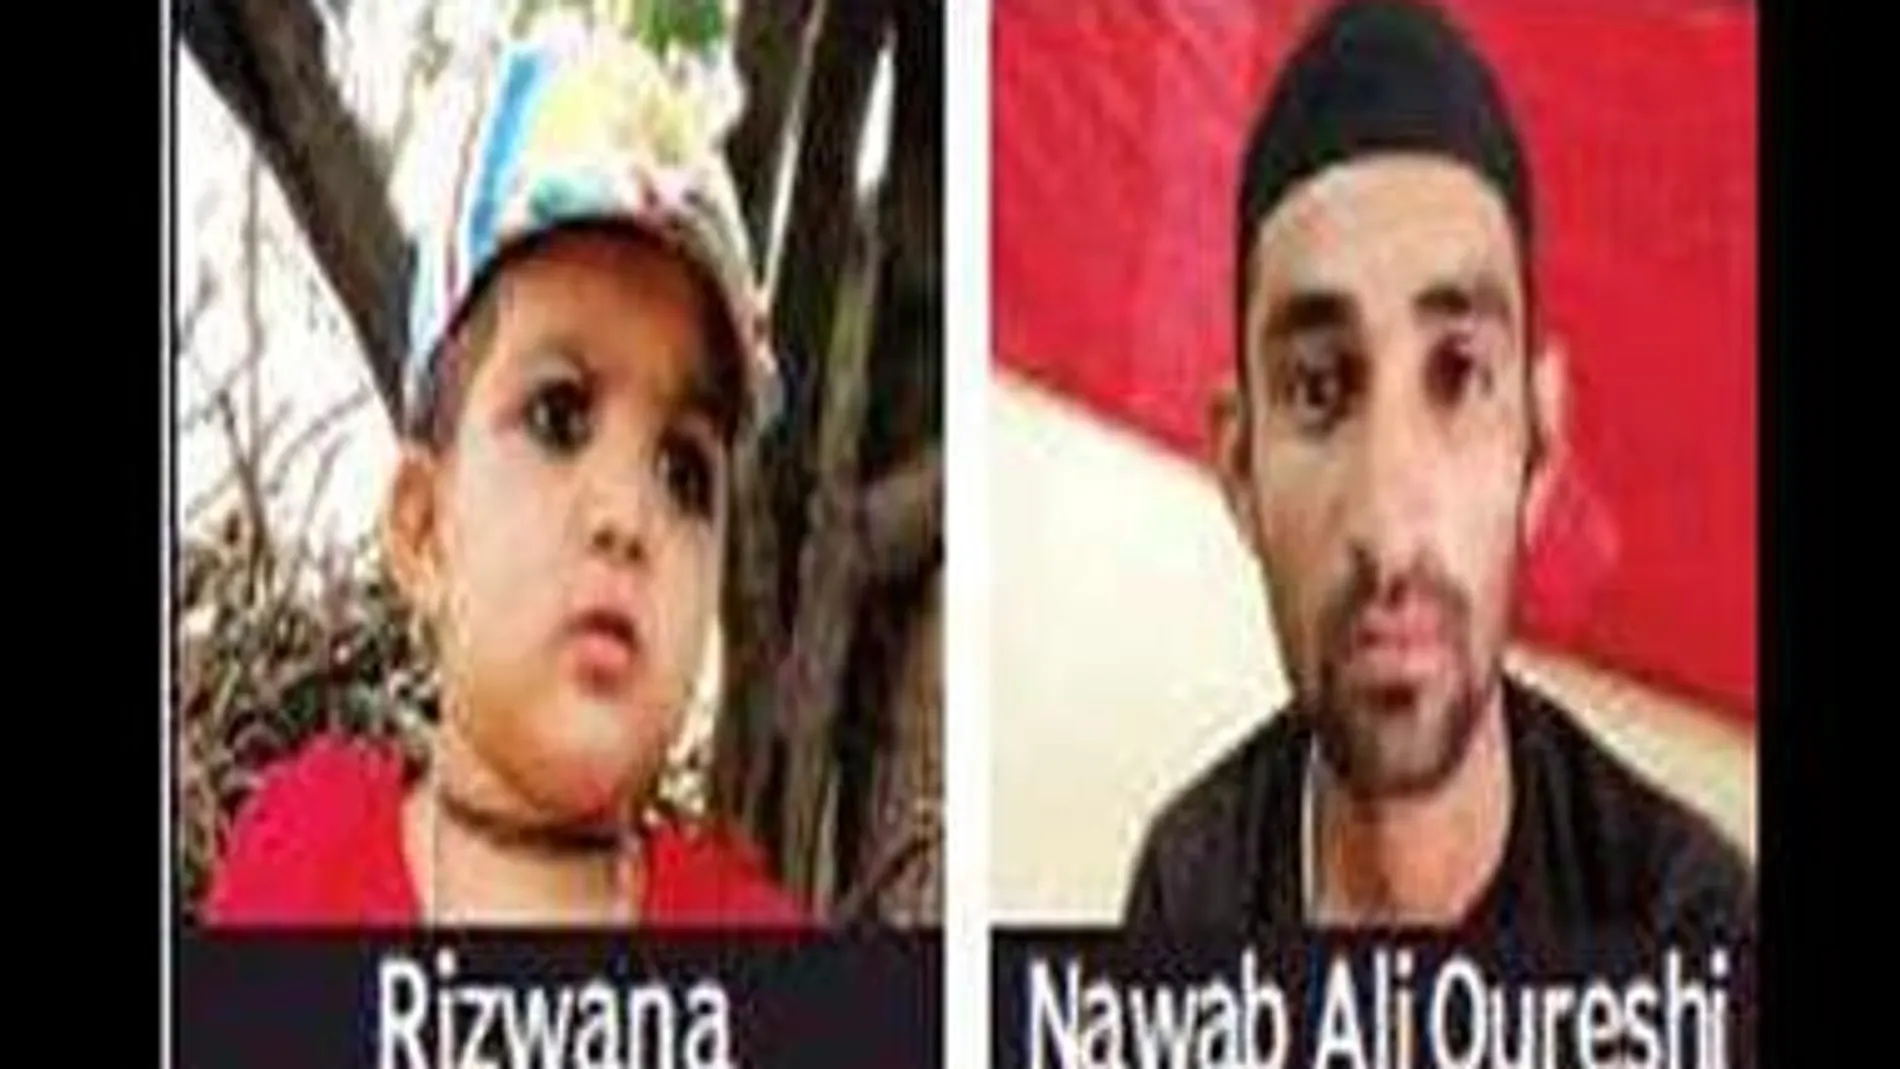 Inicialmente Nawab Ali Qureshi intentó convencer a su familia de que un gato podría haber matado a la niña